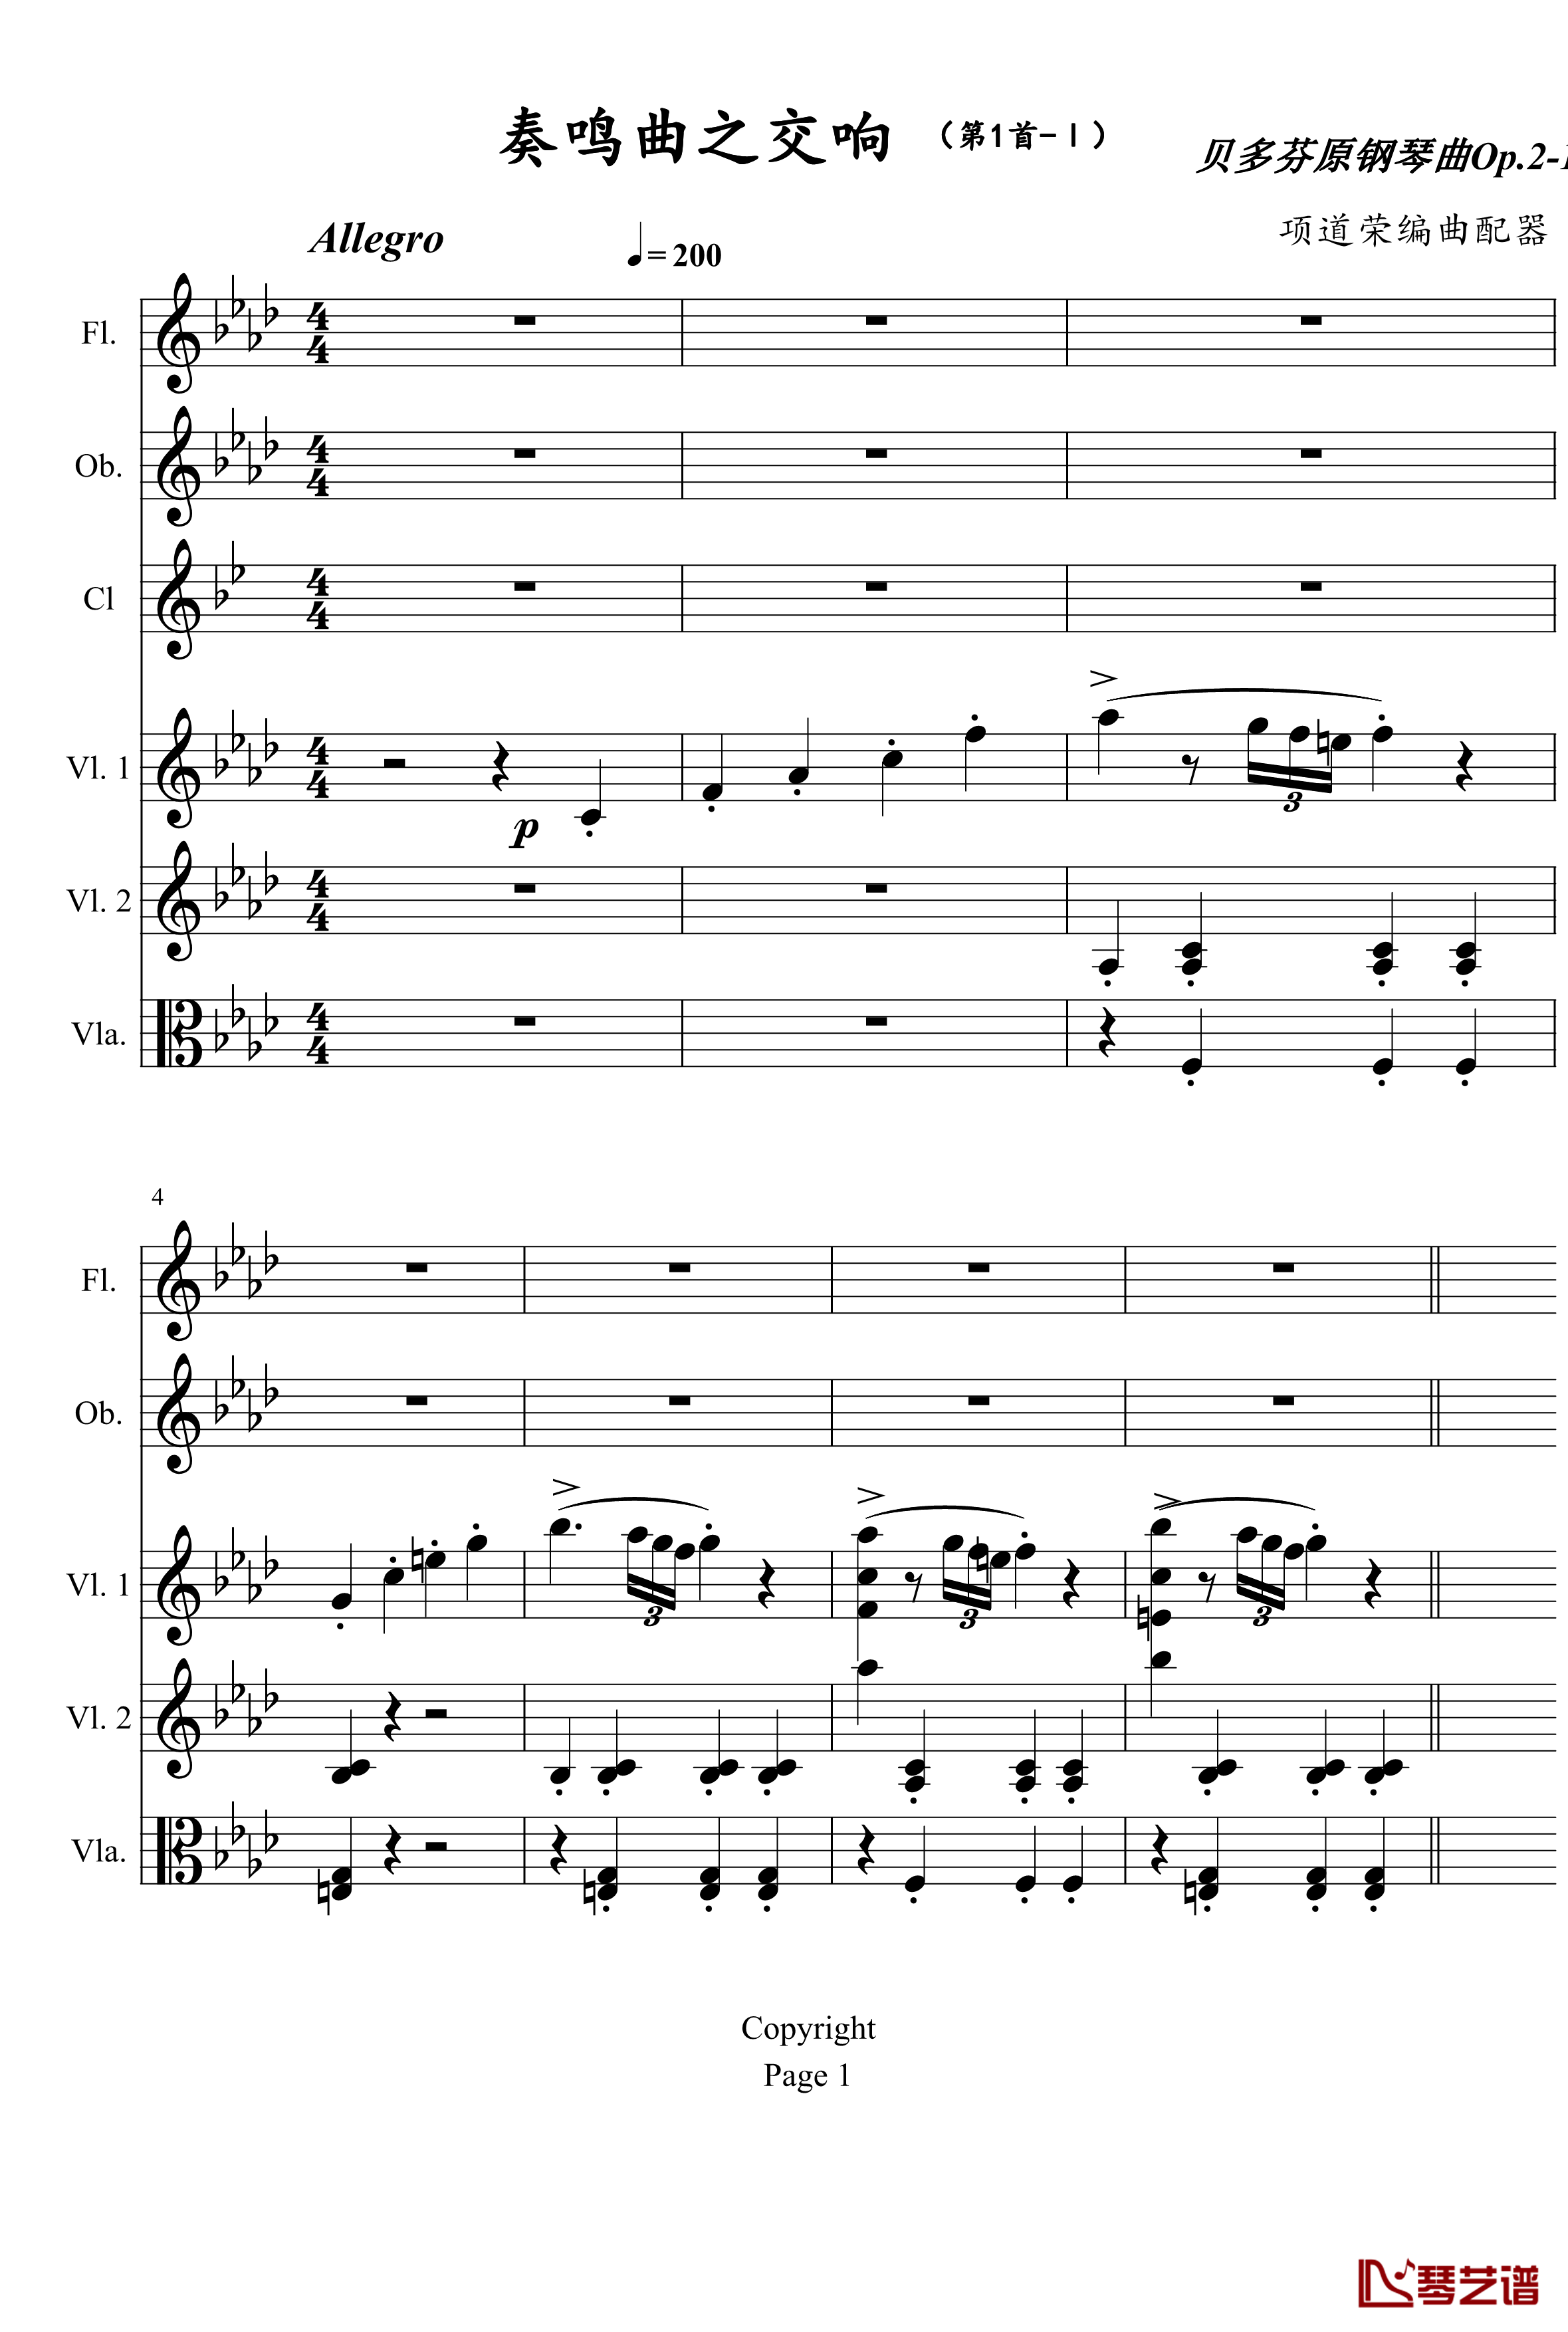 奏鸣曲之交响钢琴谱-第1首-Ⅰ-贝多芬-beethoven1